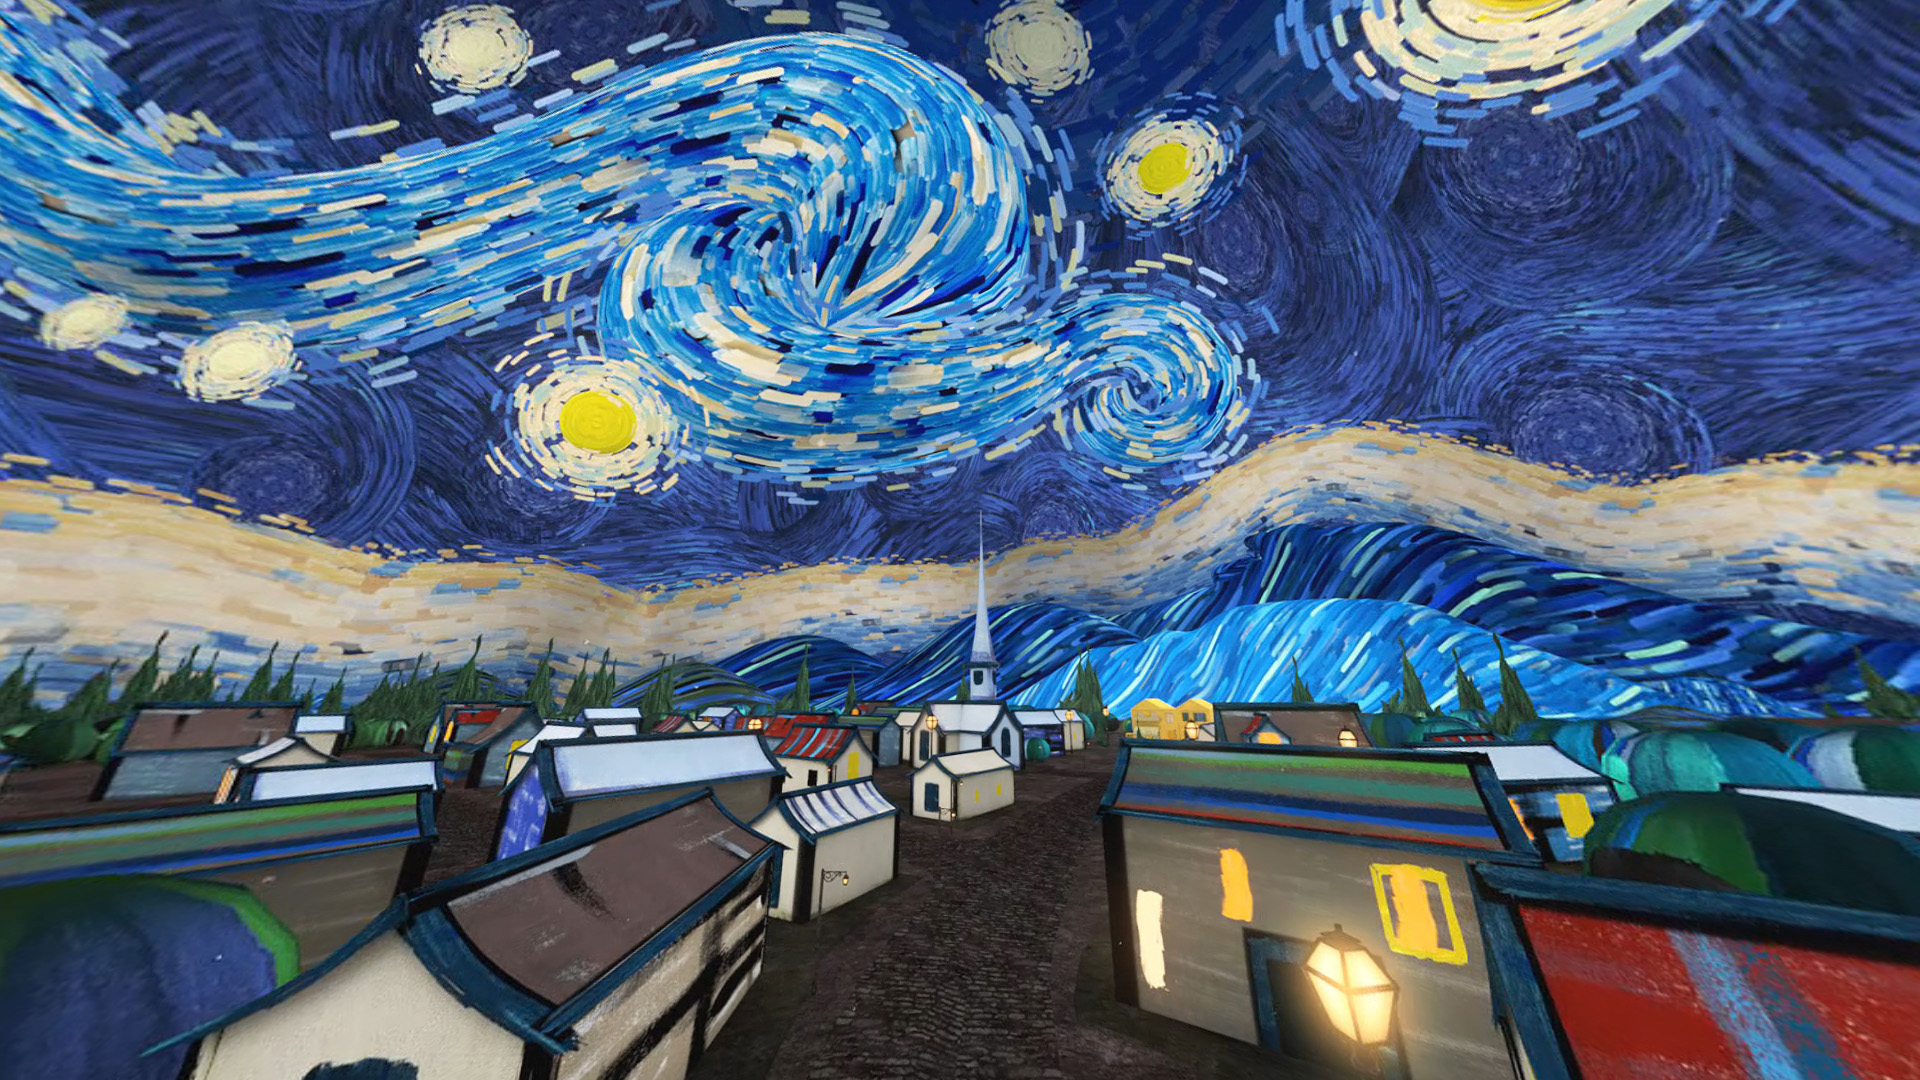 Magia de la tecnología lograr recrear “La Noche Estrellada” de Vincent Van Gogh en 3D